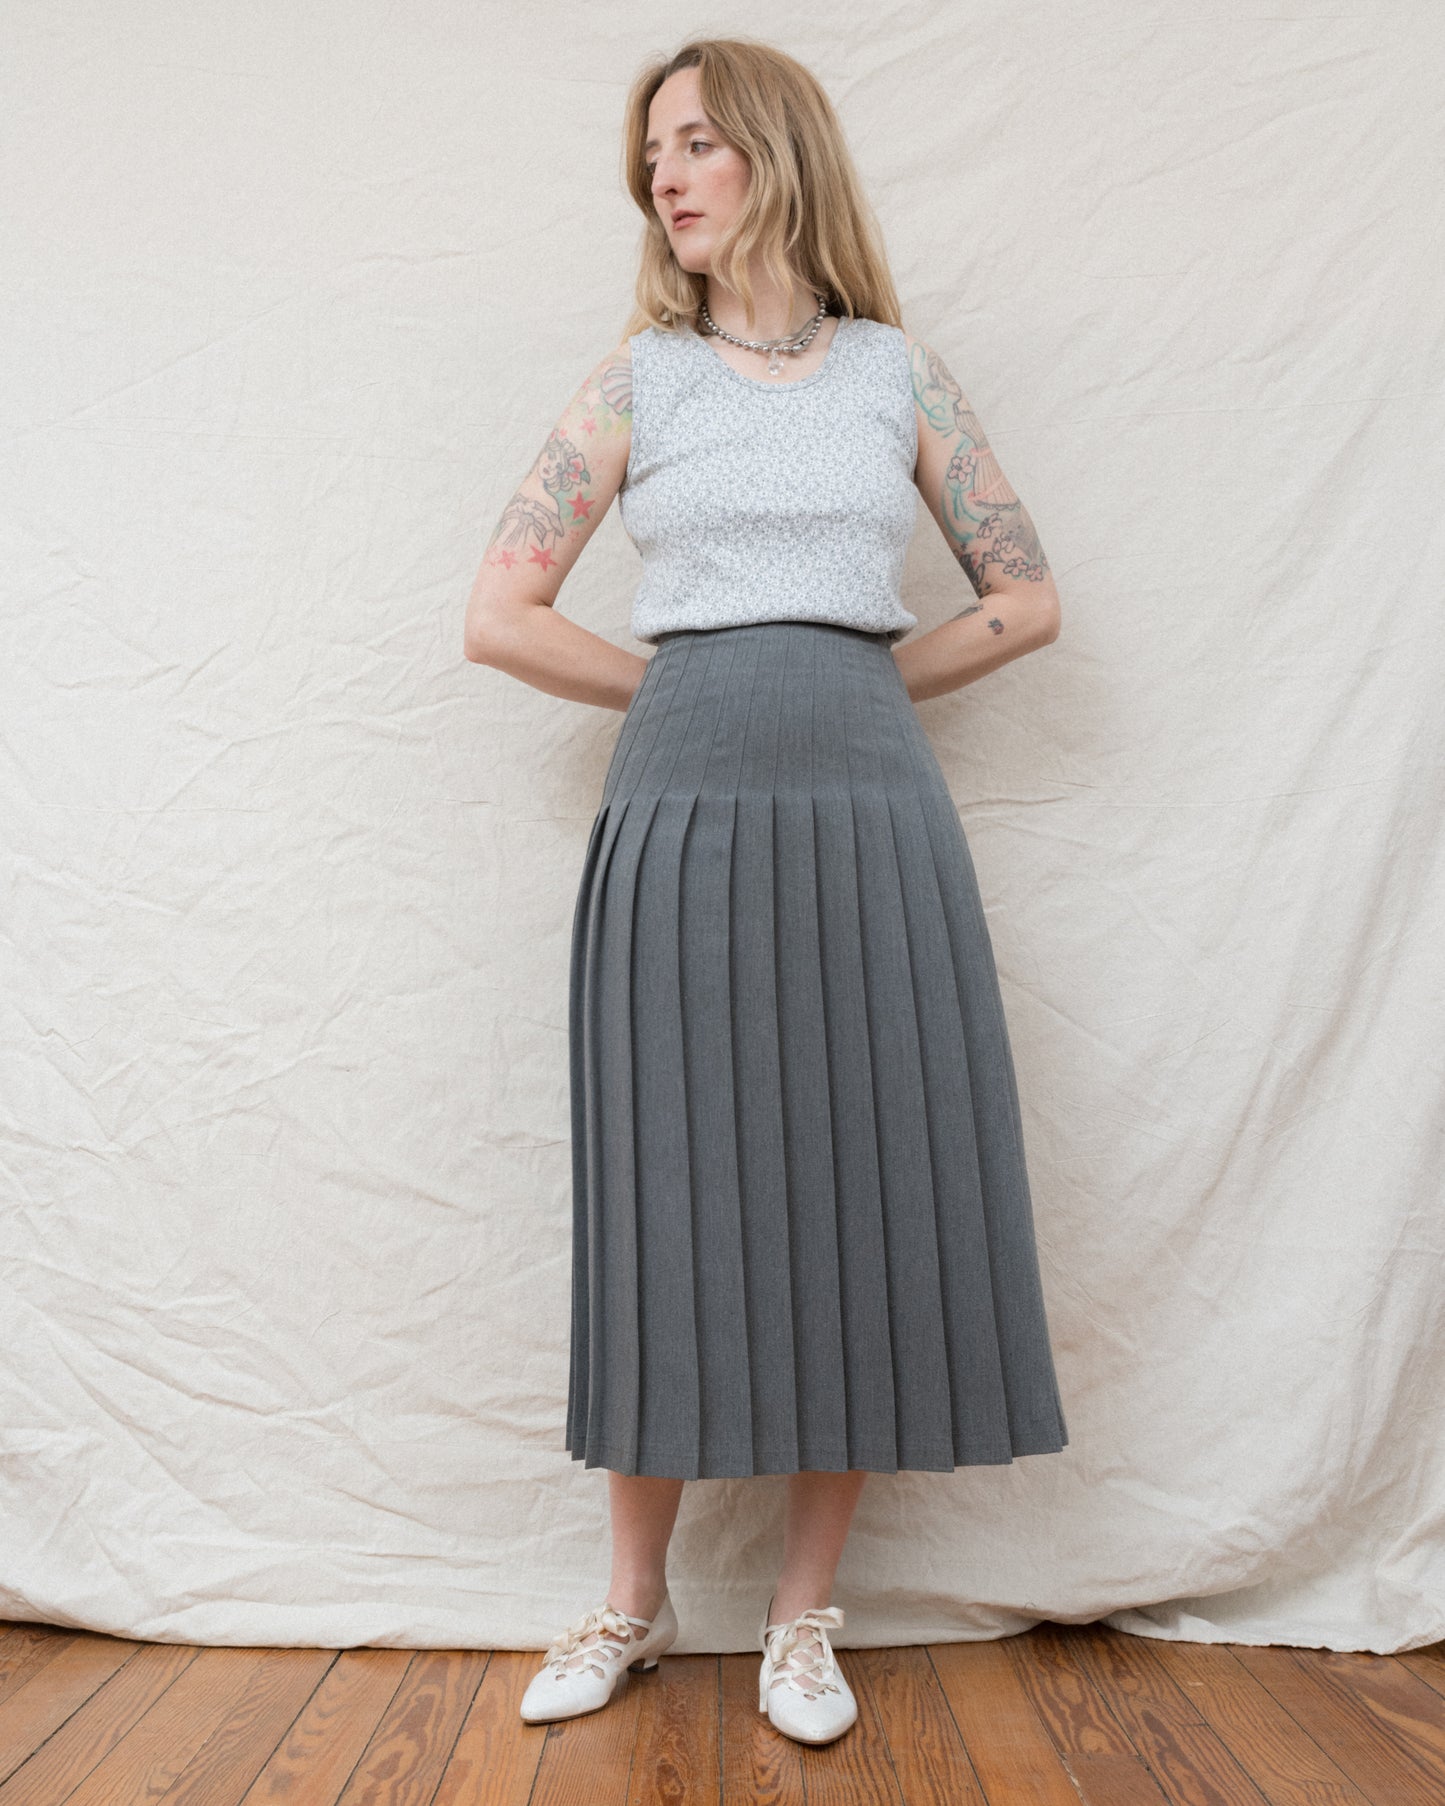 Vintage Grey Pleated Skirt (S/M)